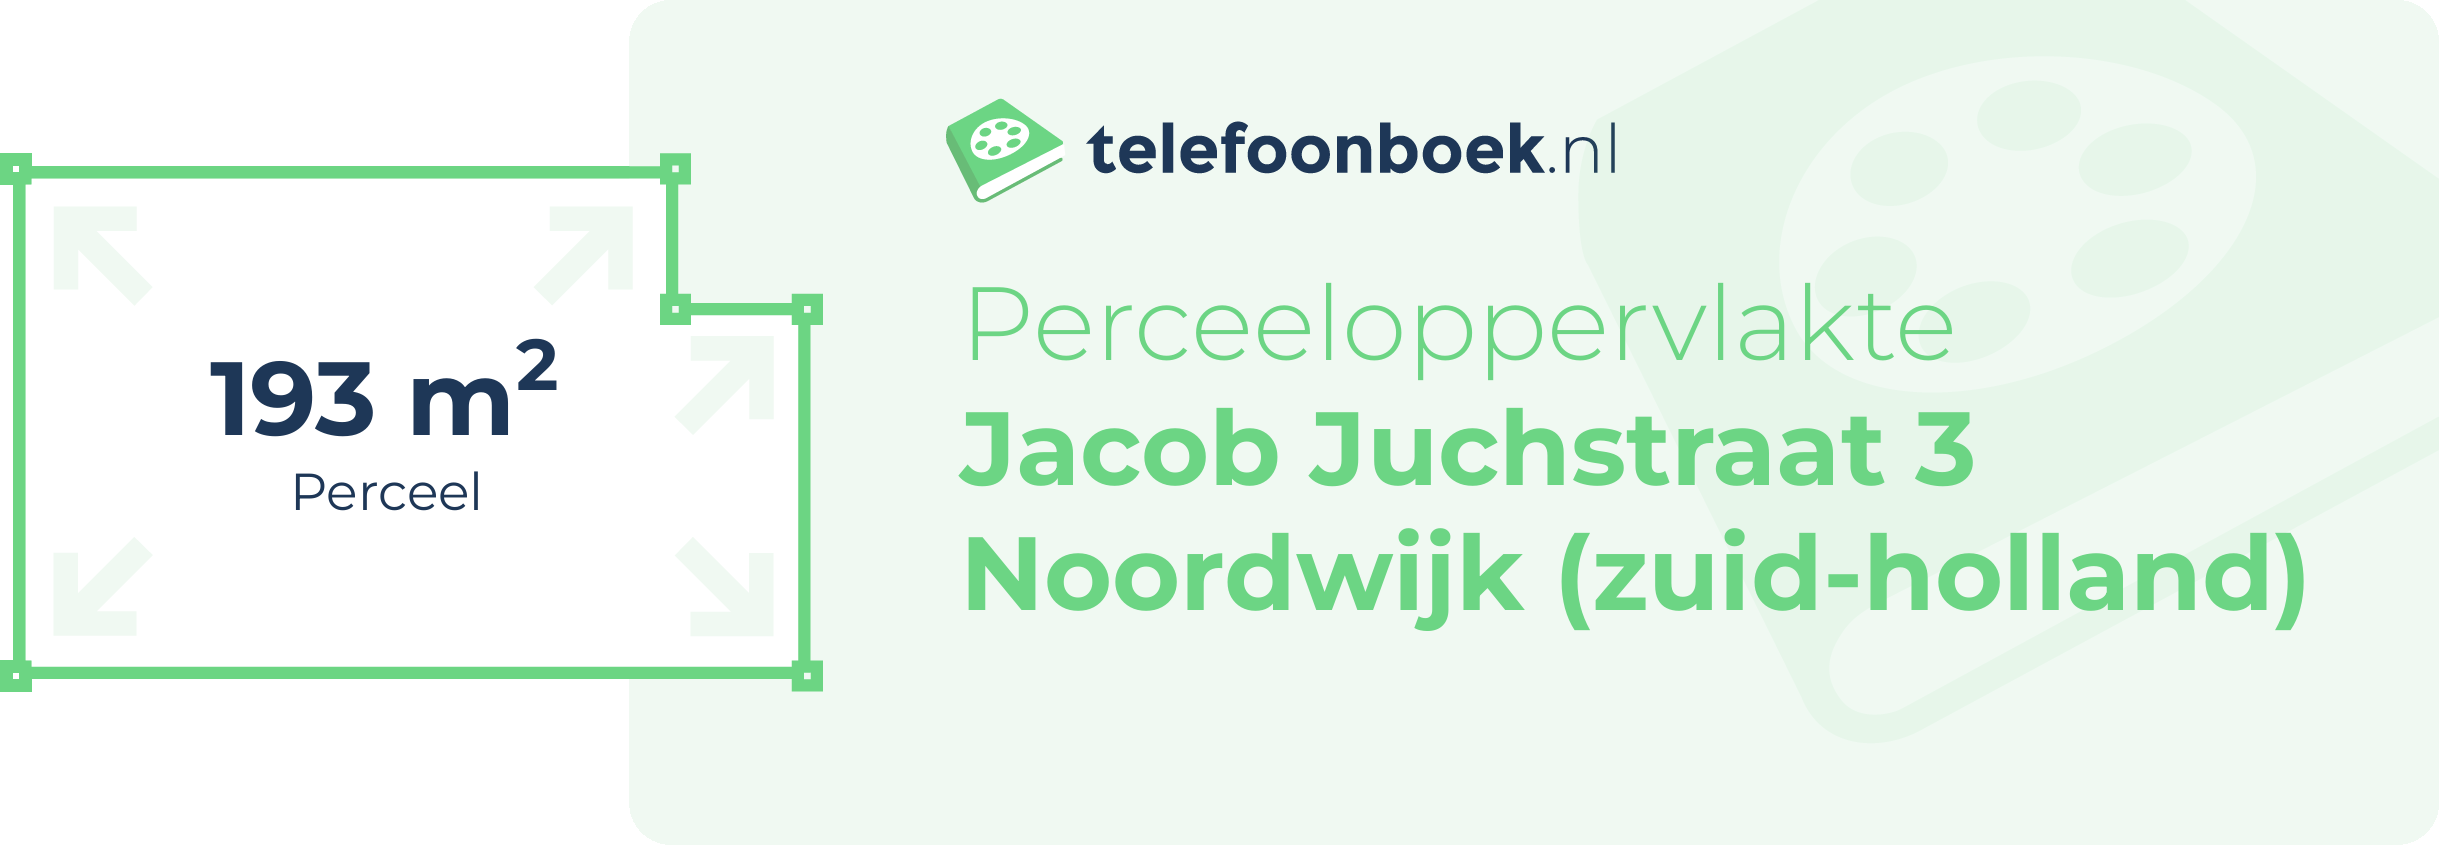 Perceeloppervlakte Jacob Juchstraat 3 Noordwijk (Zuid-Holland)